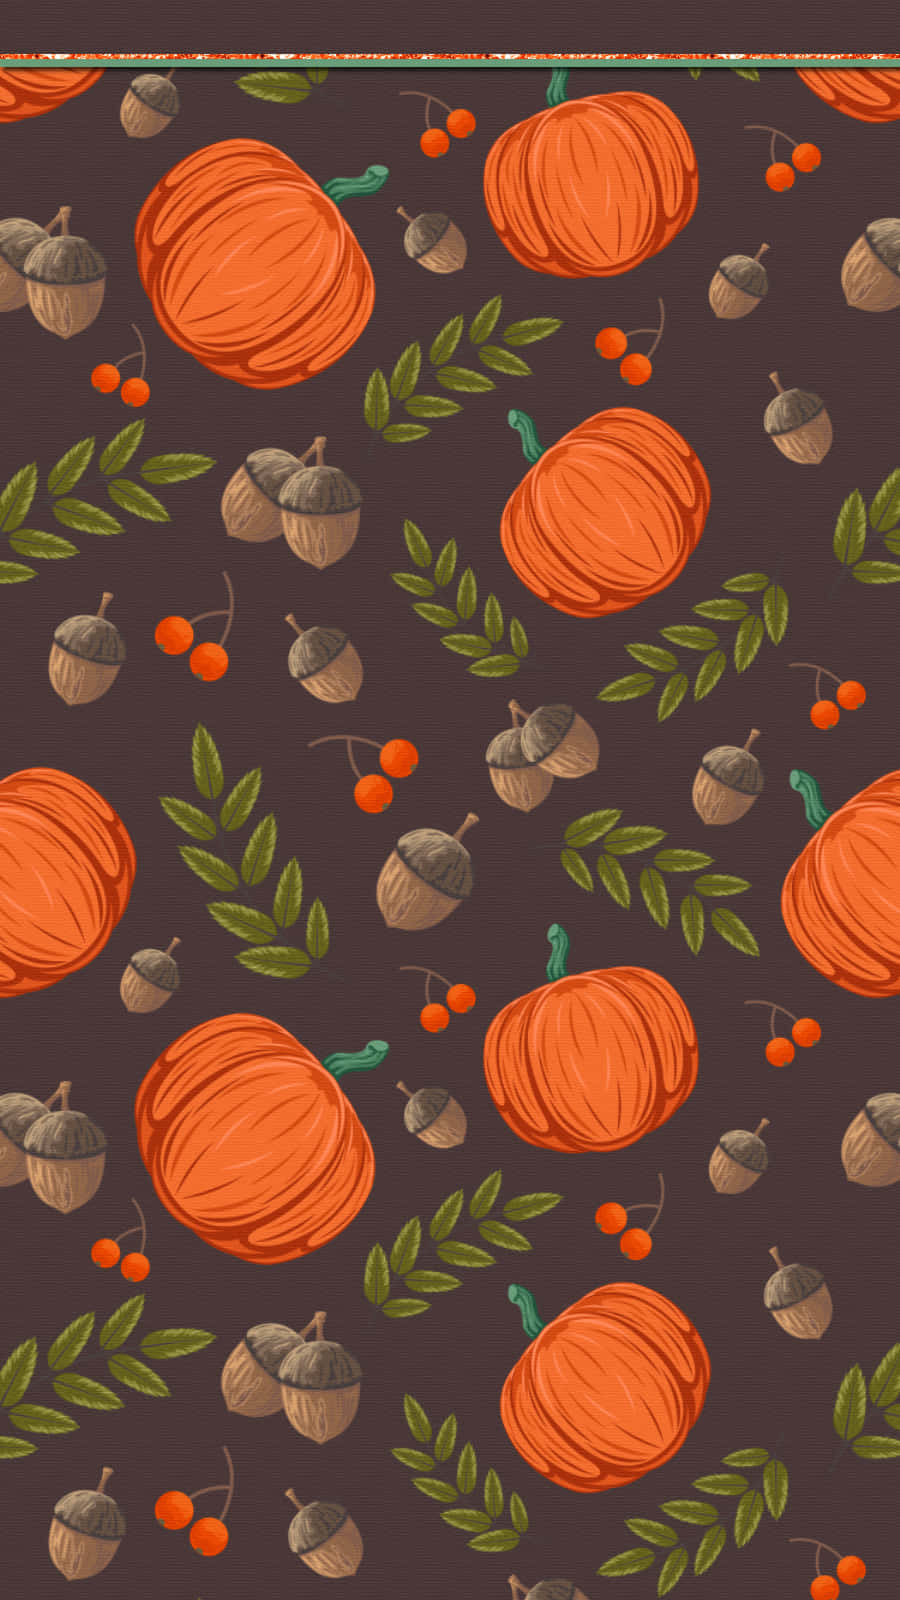 Fejr efteråret med din søde græskar Iphone Wallpaper